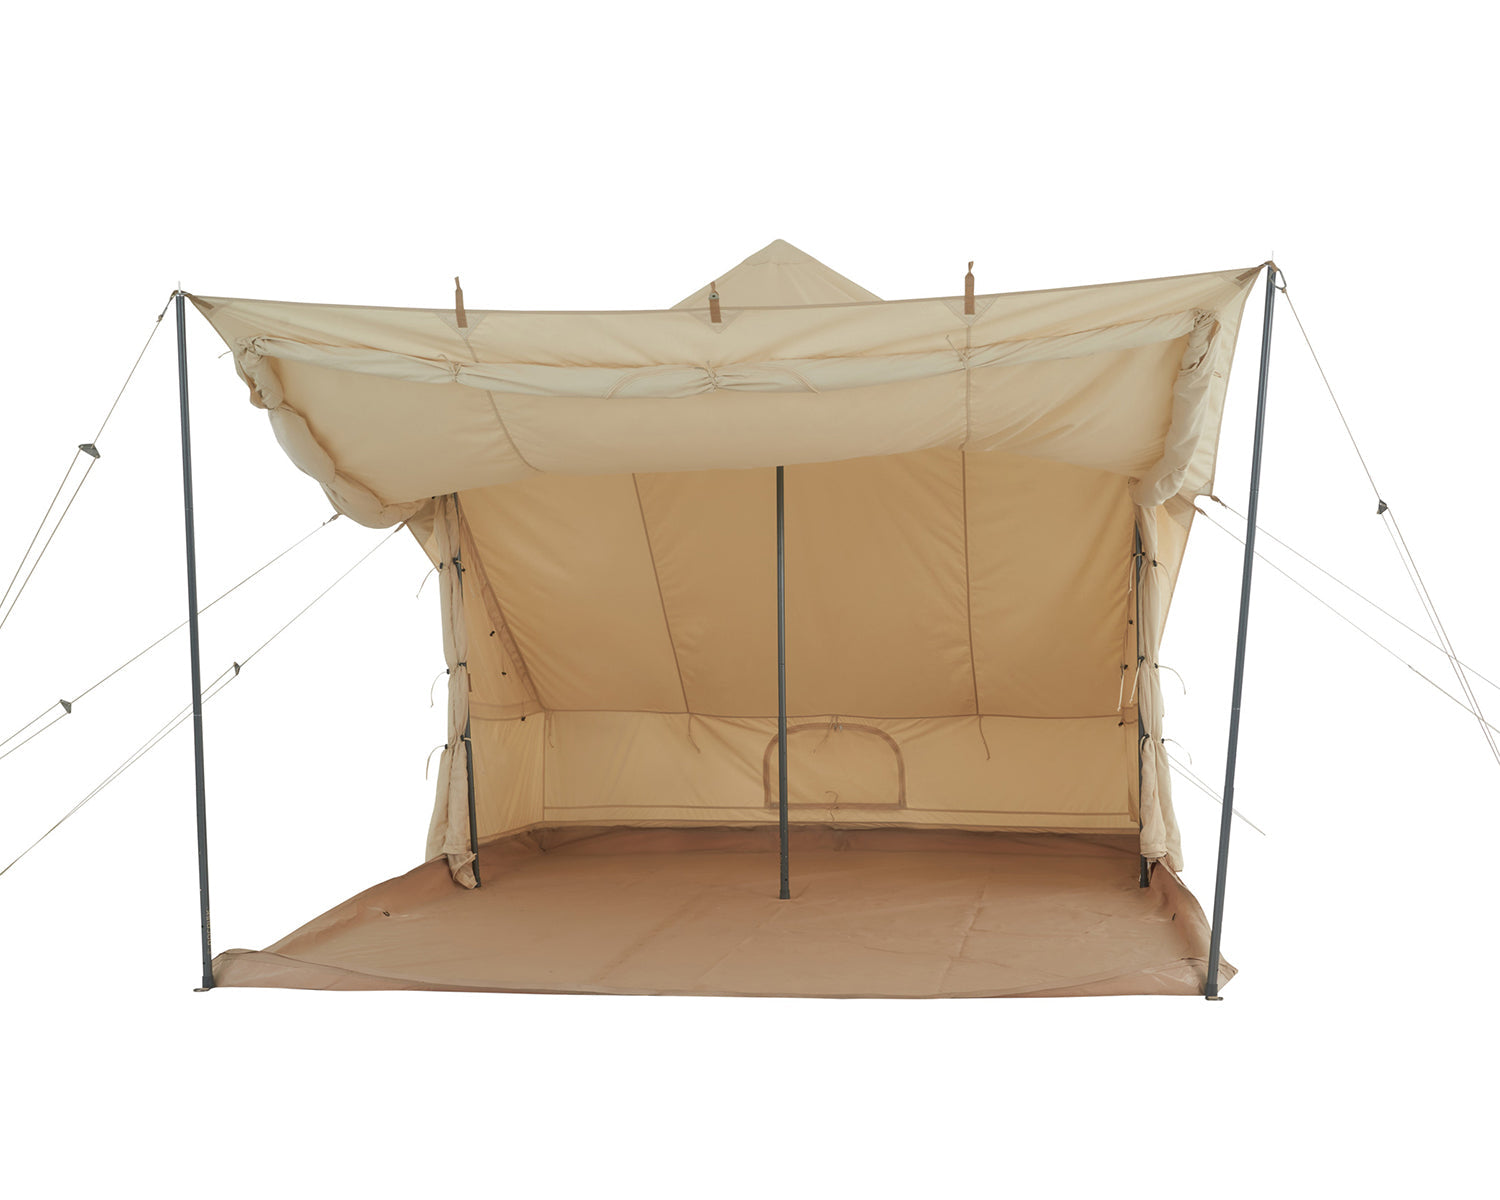 Utgard Sky glamping tent - 6 person - Sandshell